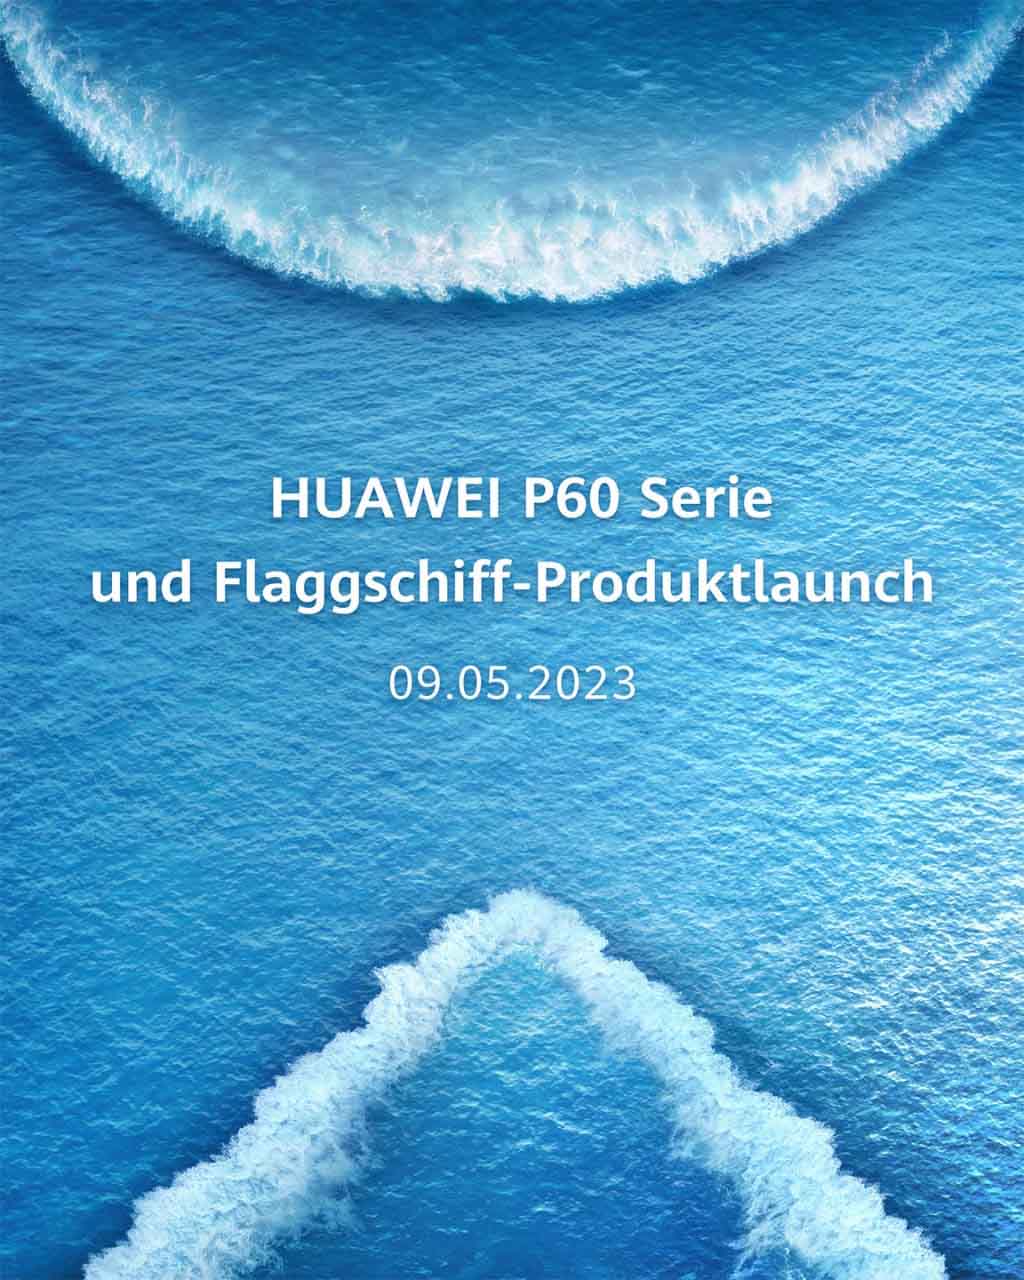 Huawei P60 series global launch